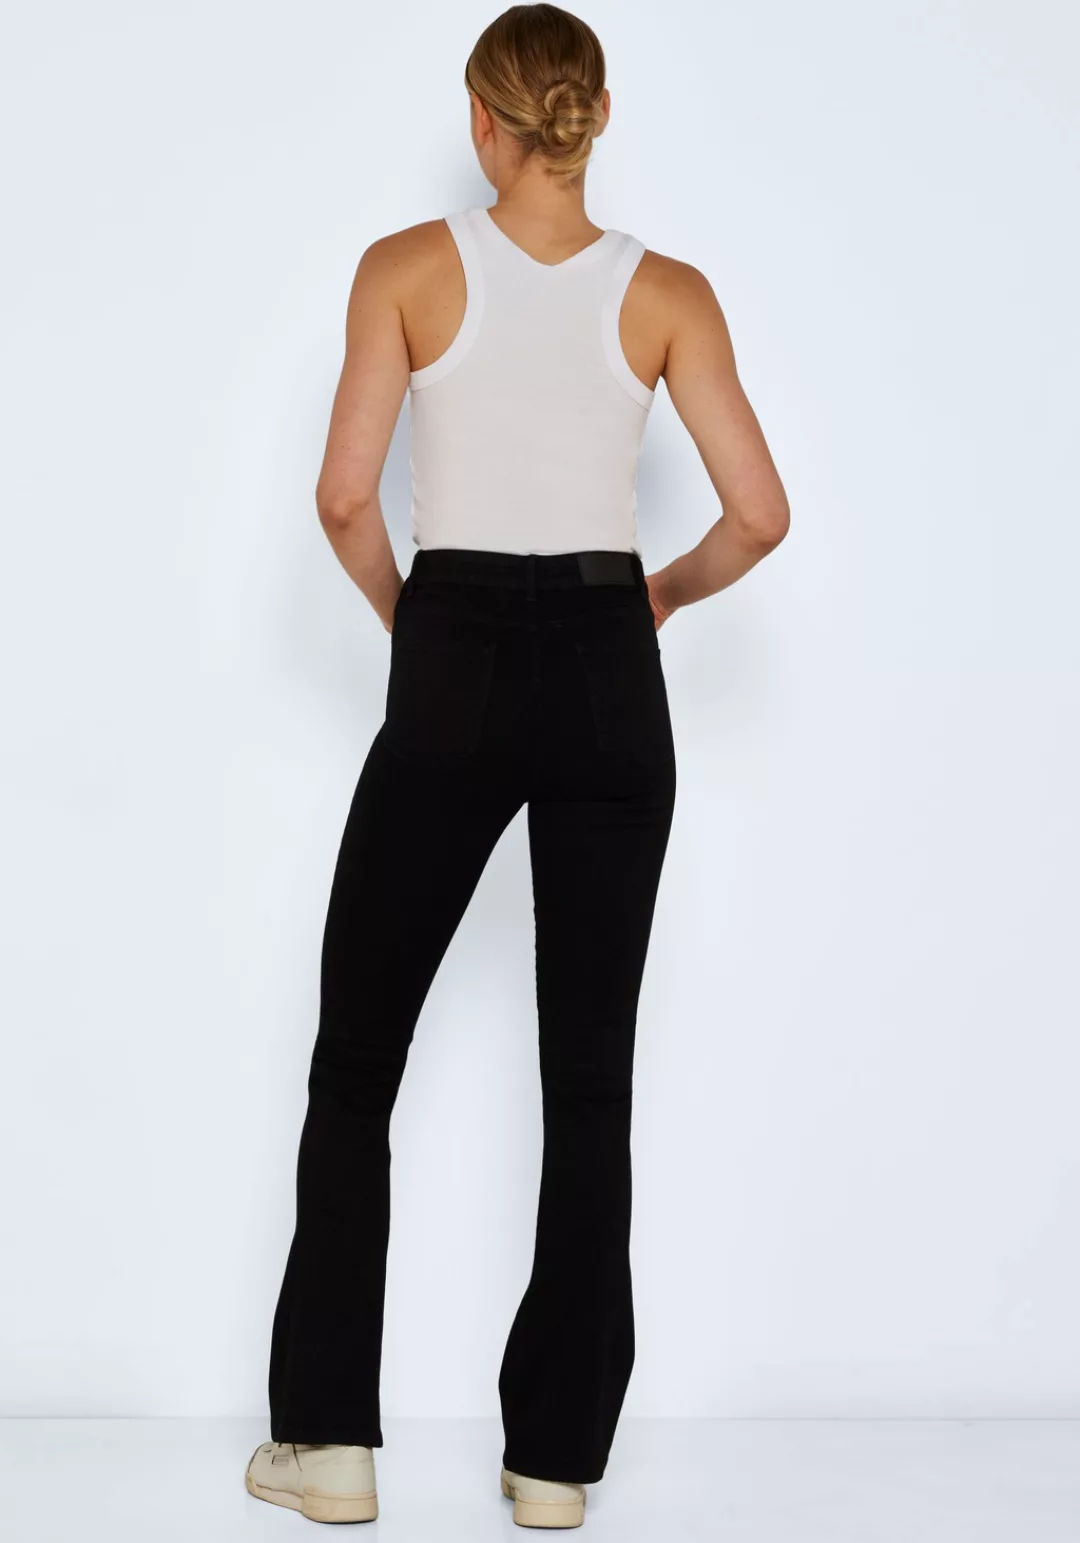 Noisy May Damen Jeans NMSALLIE HW FLARE VI023BL - Flare Fit - Schwarz - Bla günstig online kaufen